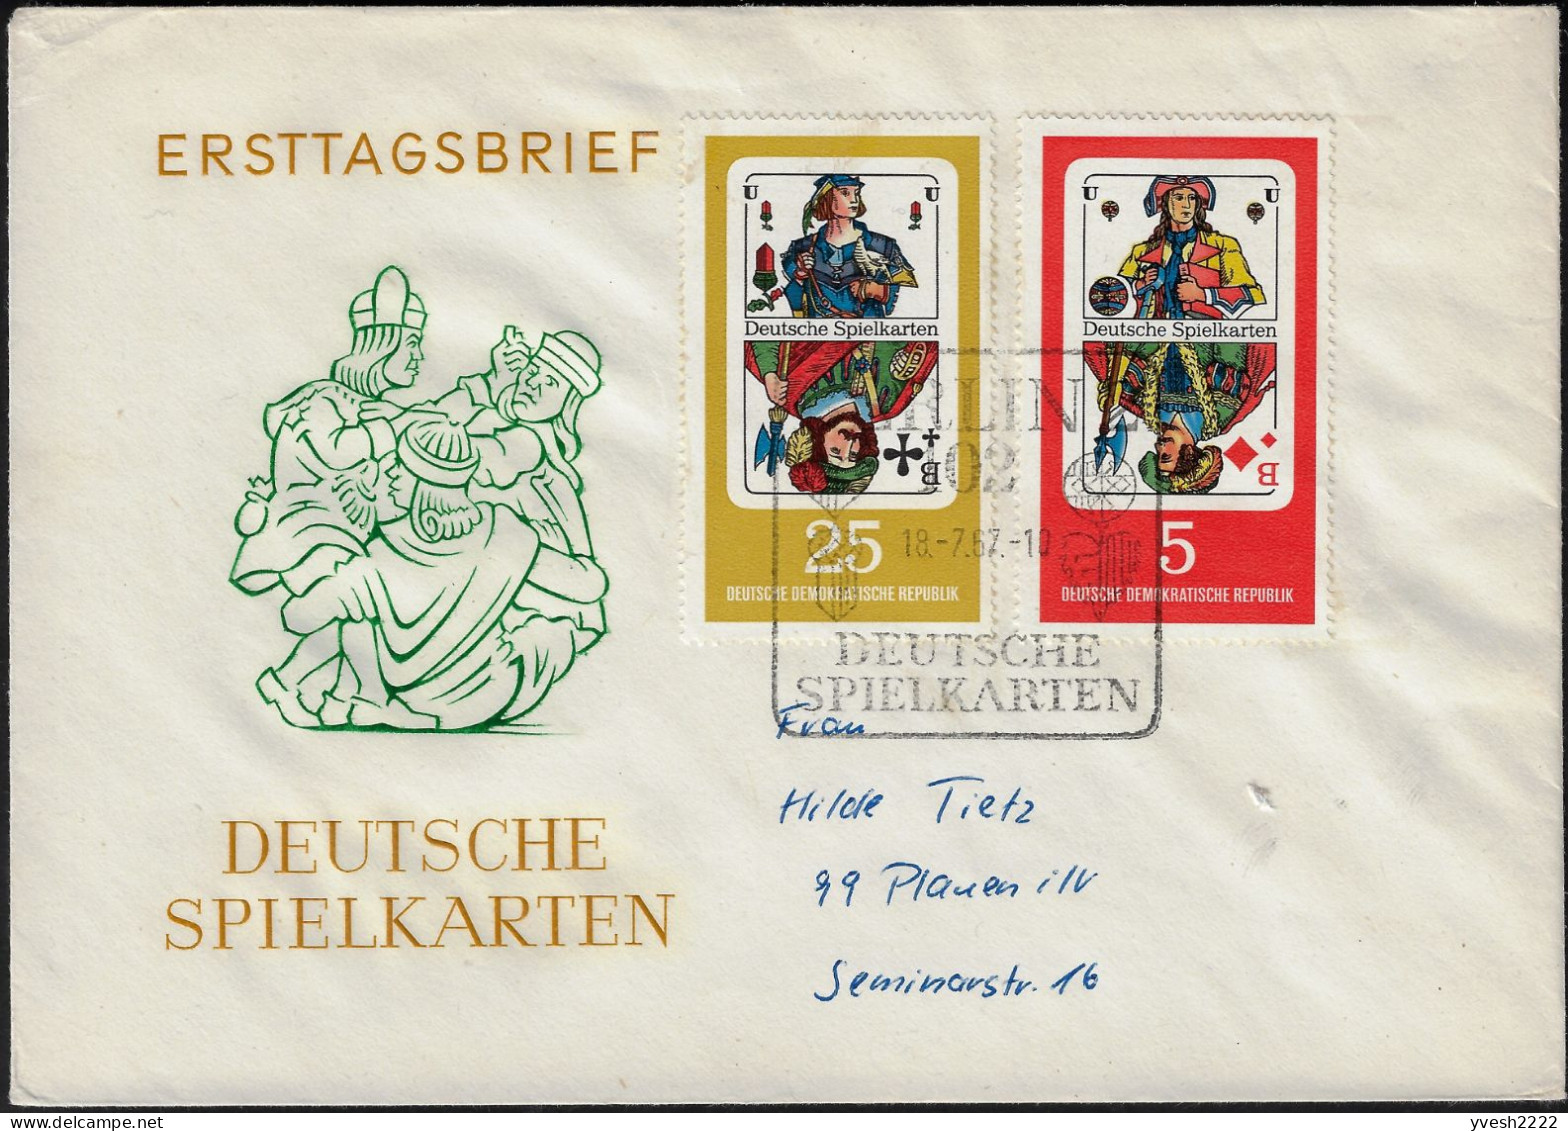 Allemagne Démocratique 1967 Y&T 995 à 998 Sur FDC. Cartes à Jouer. Valets De Carreau, De Coeur, De Pique Et De Trèfle - Non Classificati